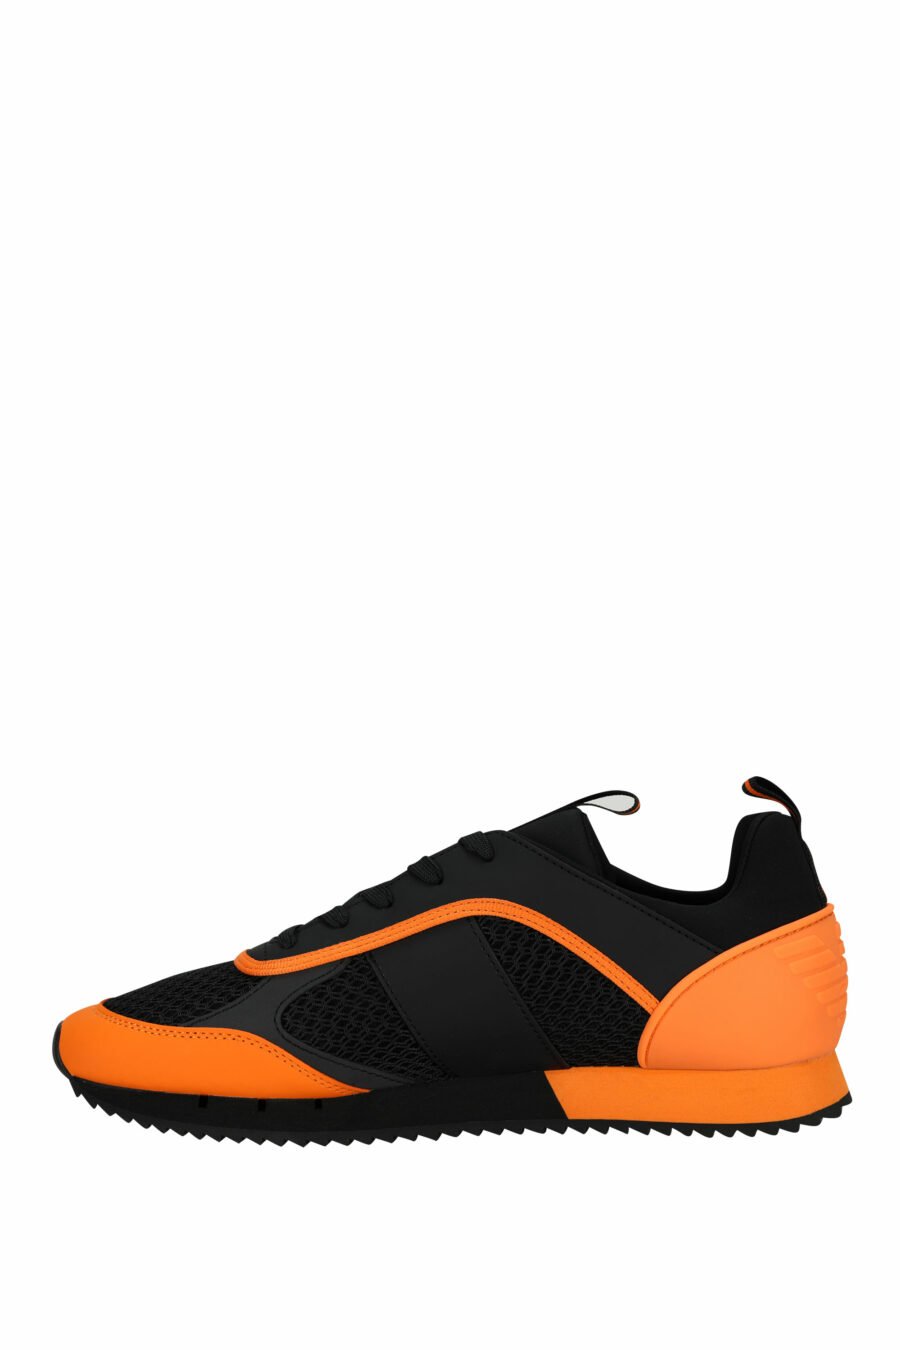 Schwarze Turnschuhe mit orangefarbenem "lux identity"-Logo - 8057970798149 2